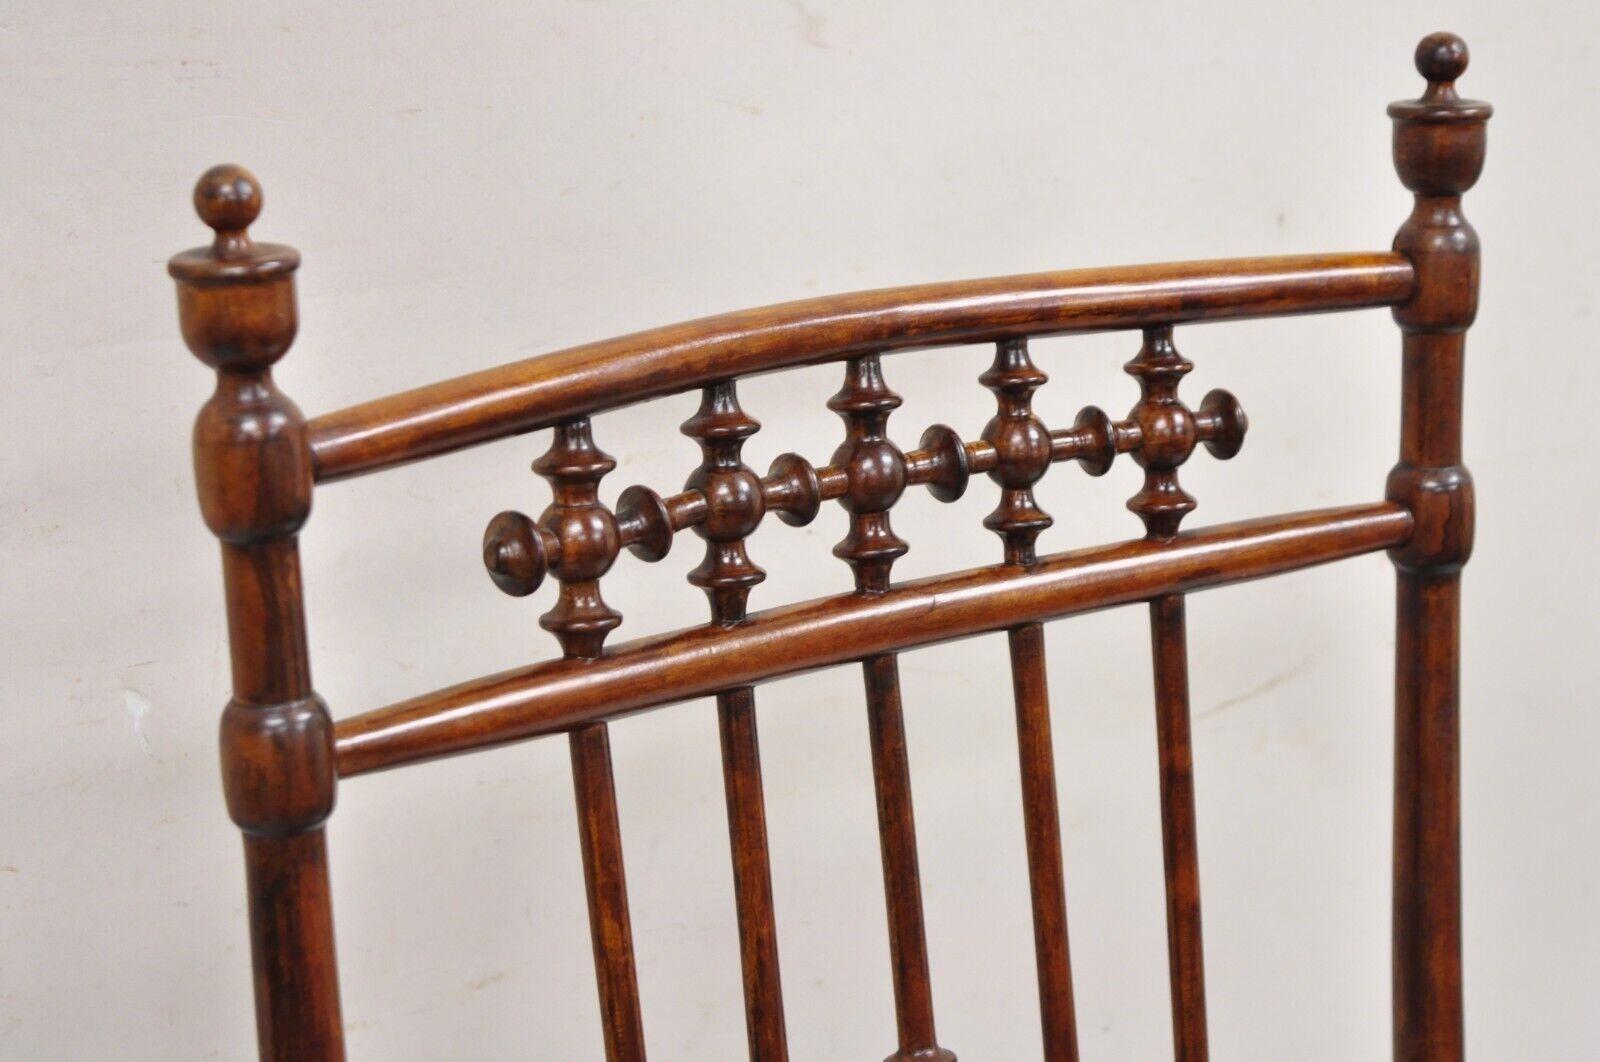 Antike viktorianische Ästhetische Bewegung Kastanienholz Stick und Ball Spindel Schaukelstuhl. Formschöner Holzrahmen, Sitz aus Schilfrohr, einzigartig gestaltete Rückenlehne, sehr schöner antiker Schaukelstuhl. Möglicherweise wurde er im Laufe der